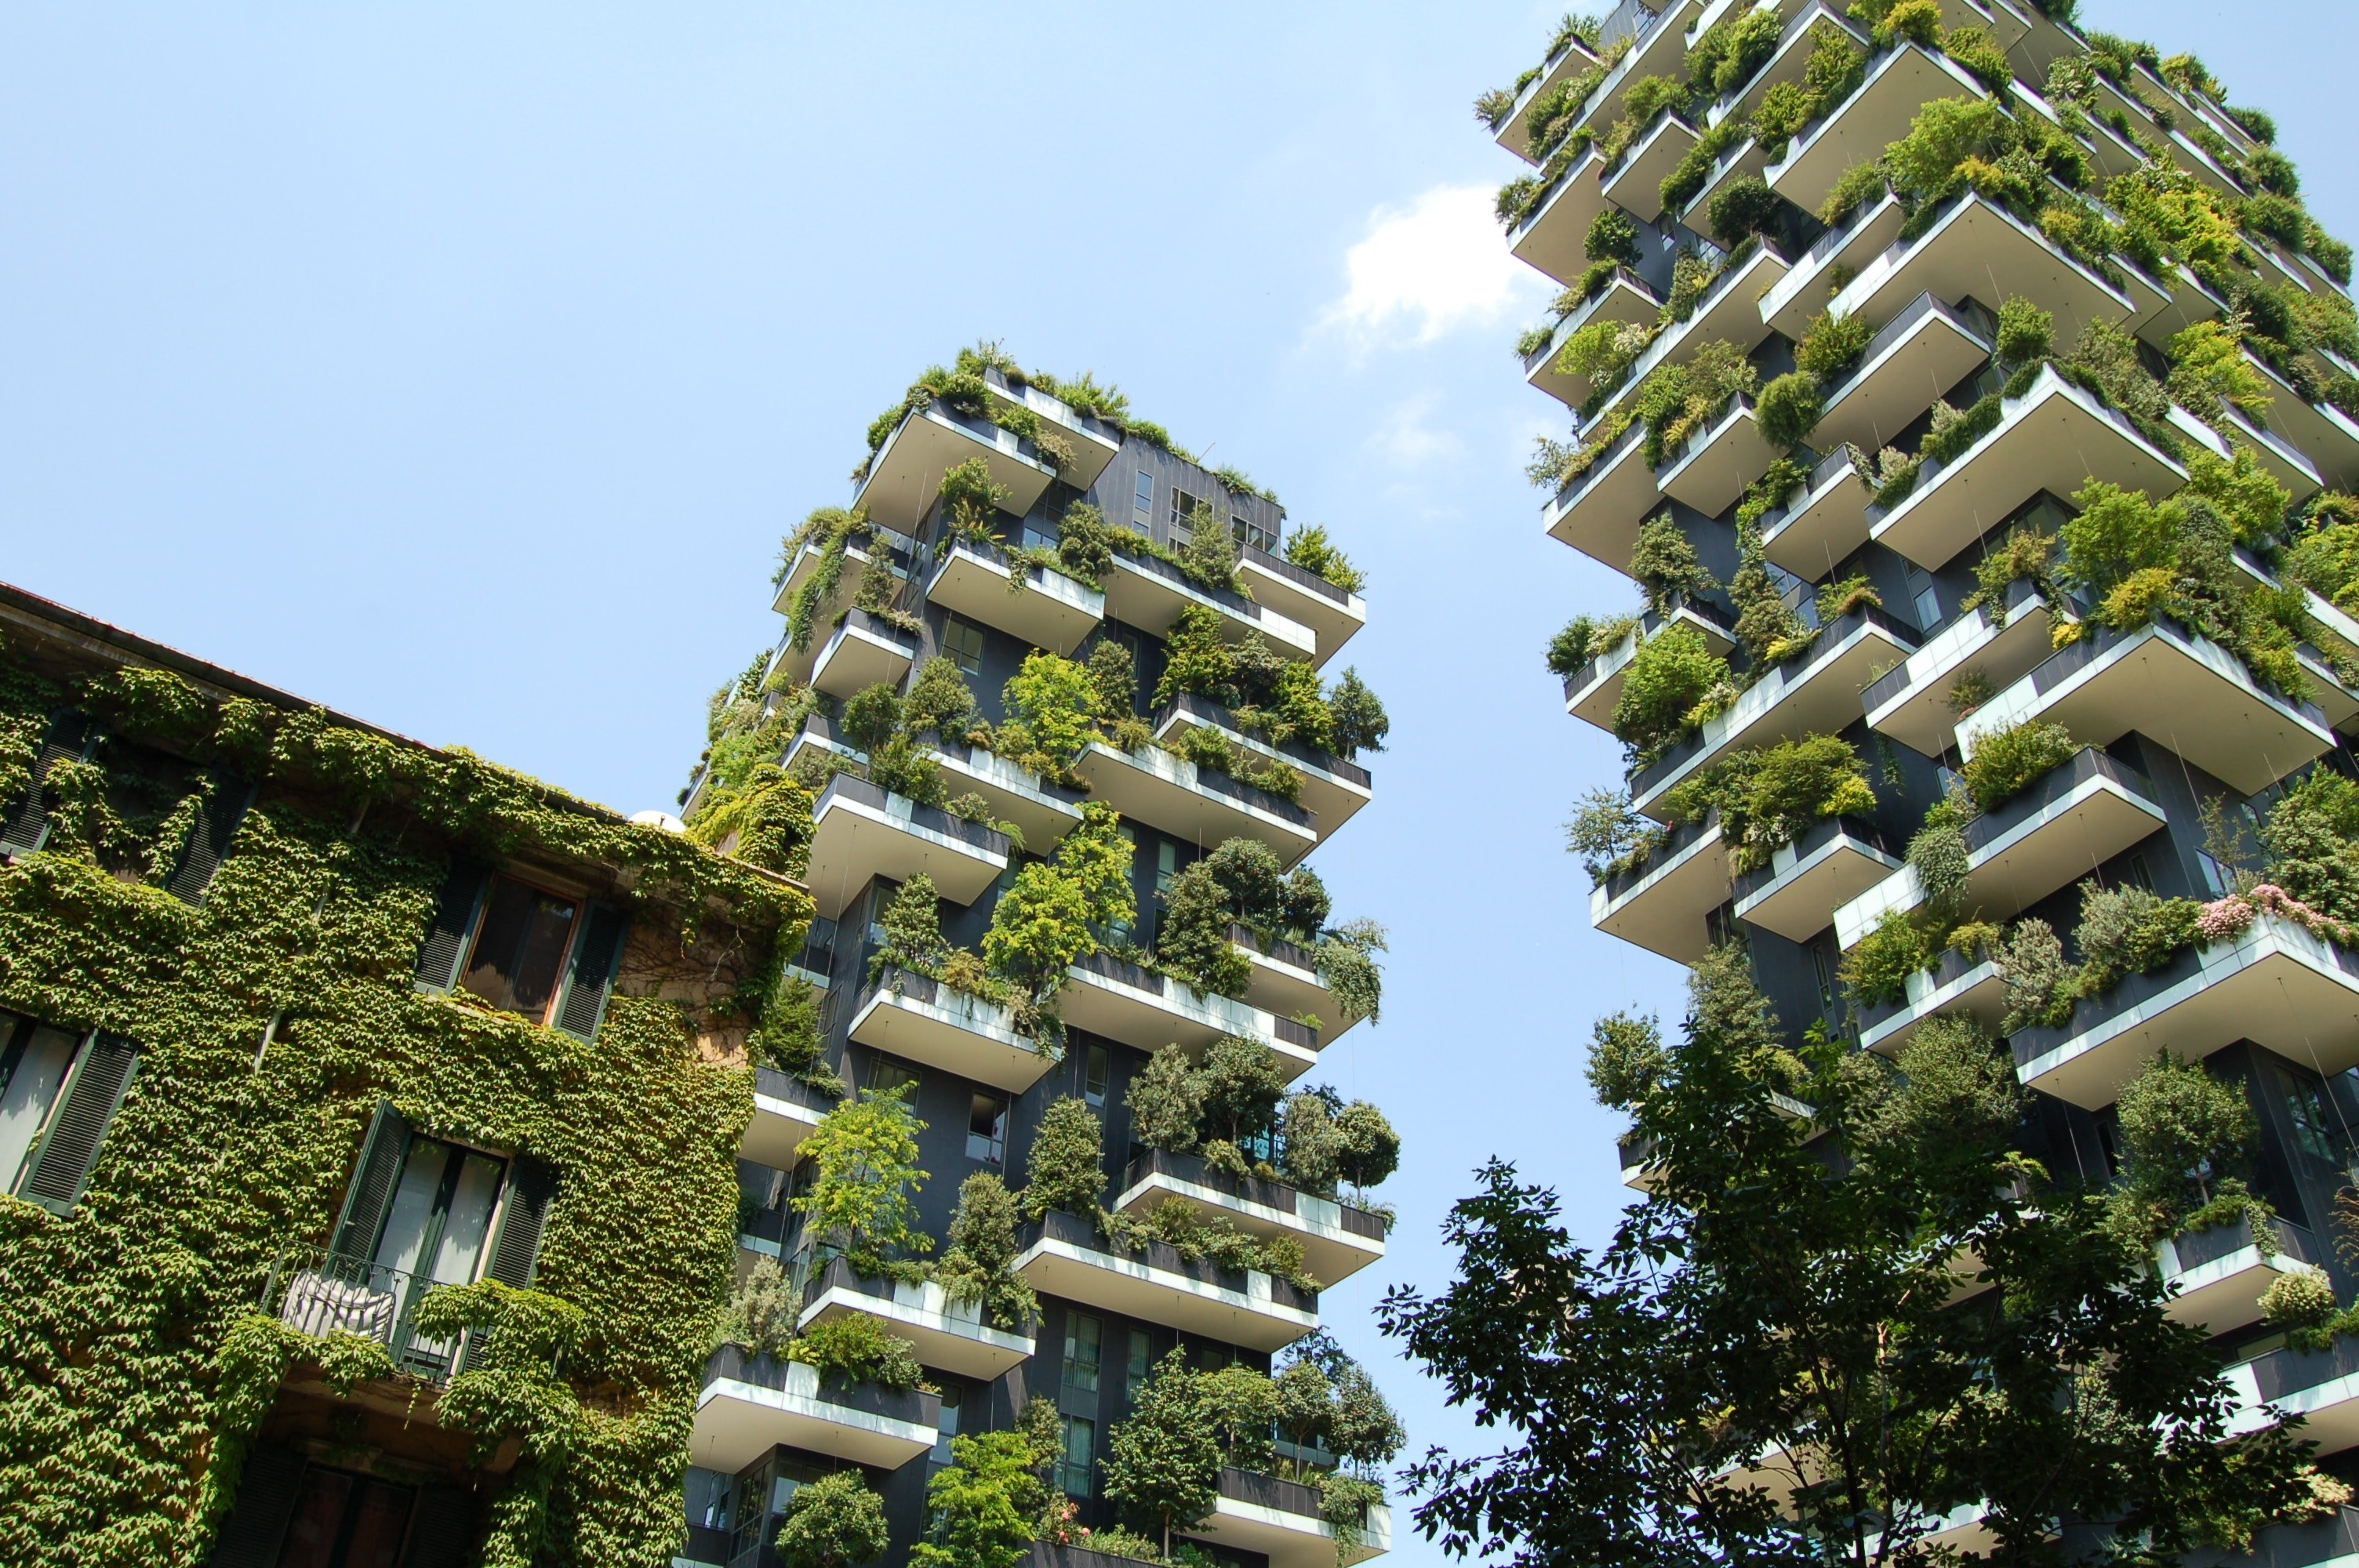 Edificios sustentables en el mundo, arquitectura verde